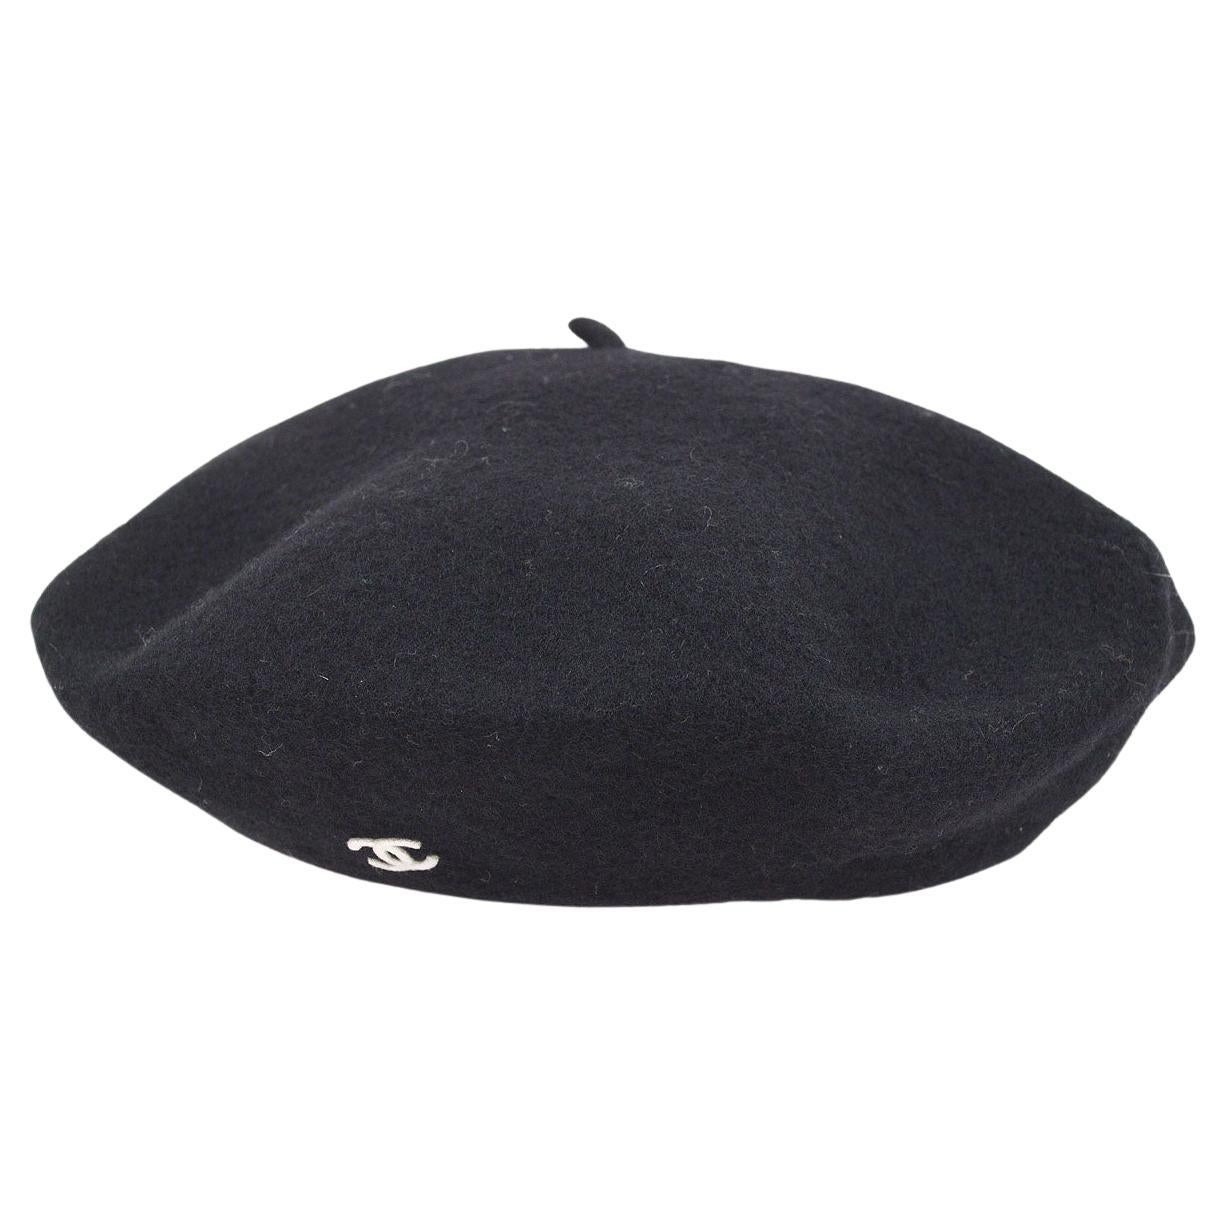 Wool cap Chanel Black size 57 cm in Wool - 4559093